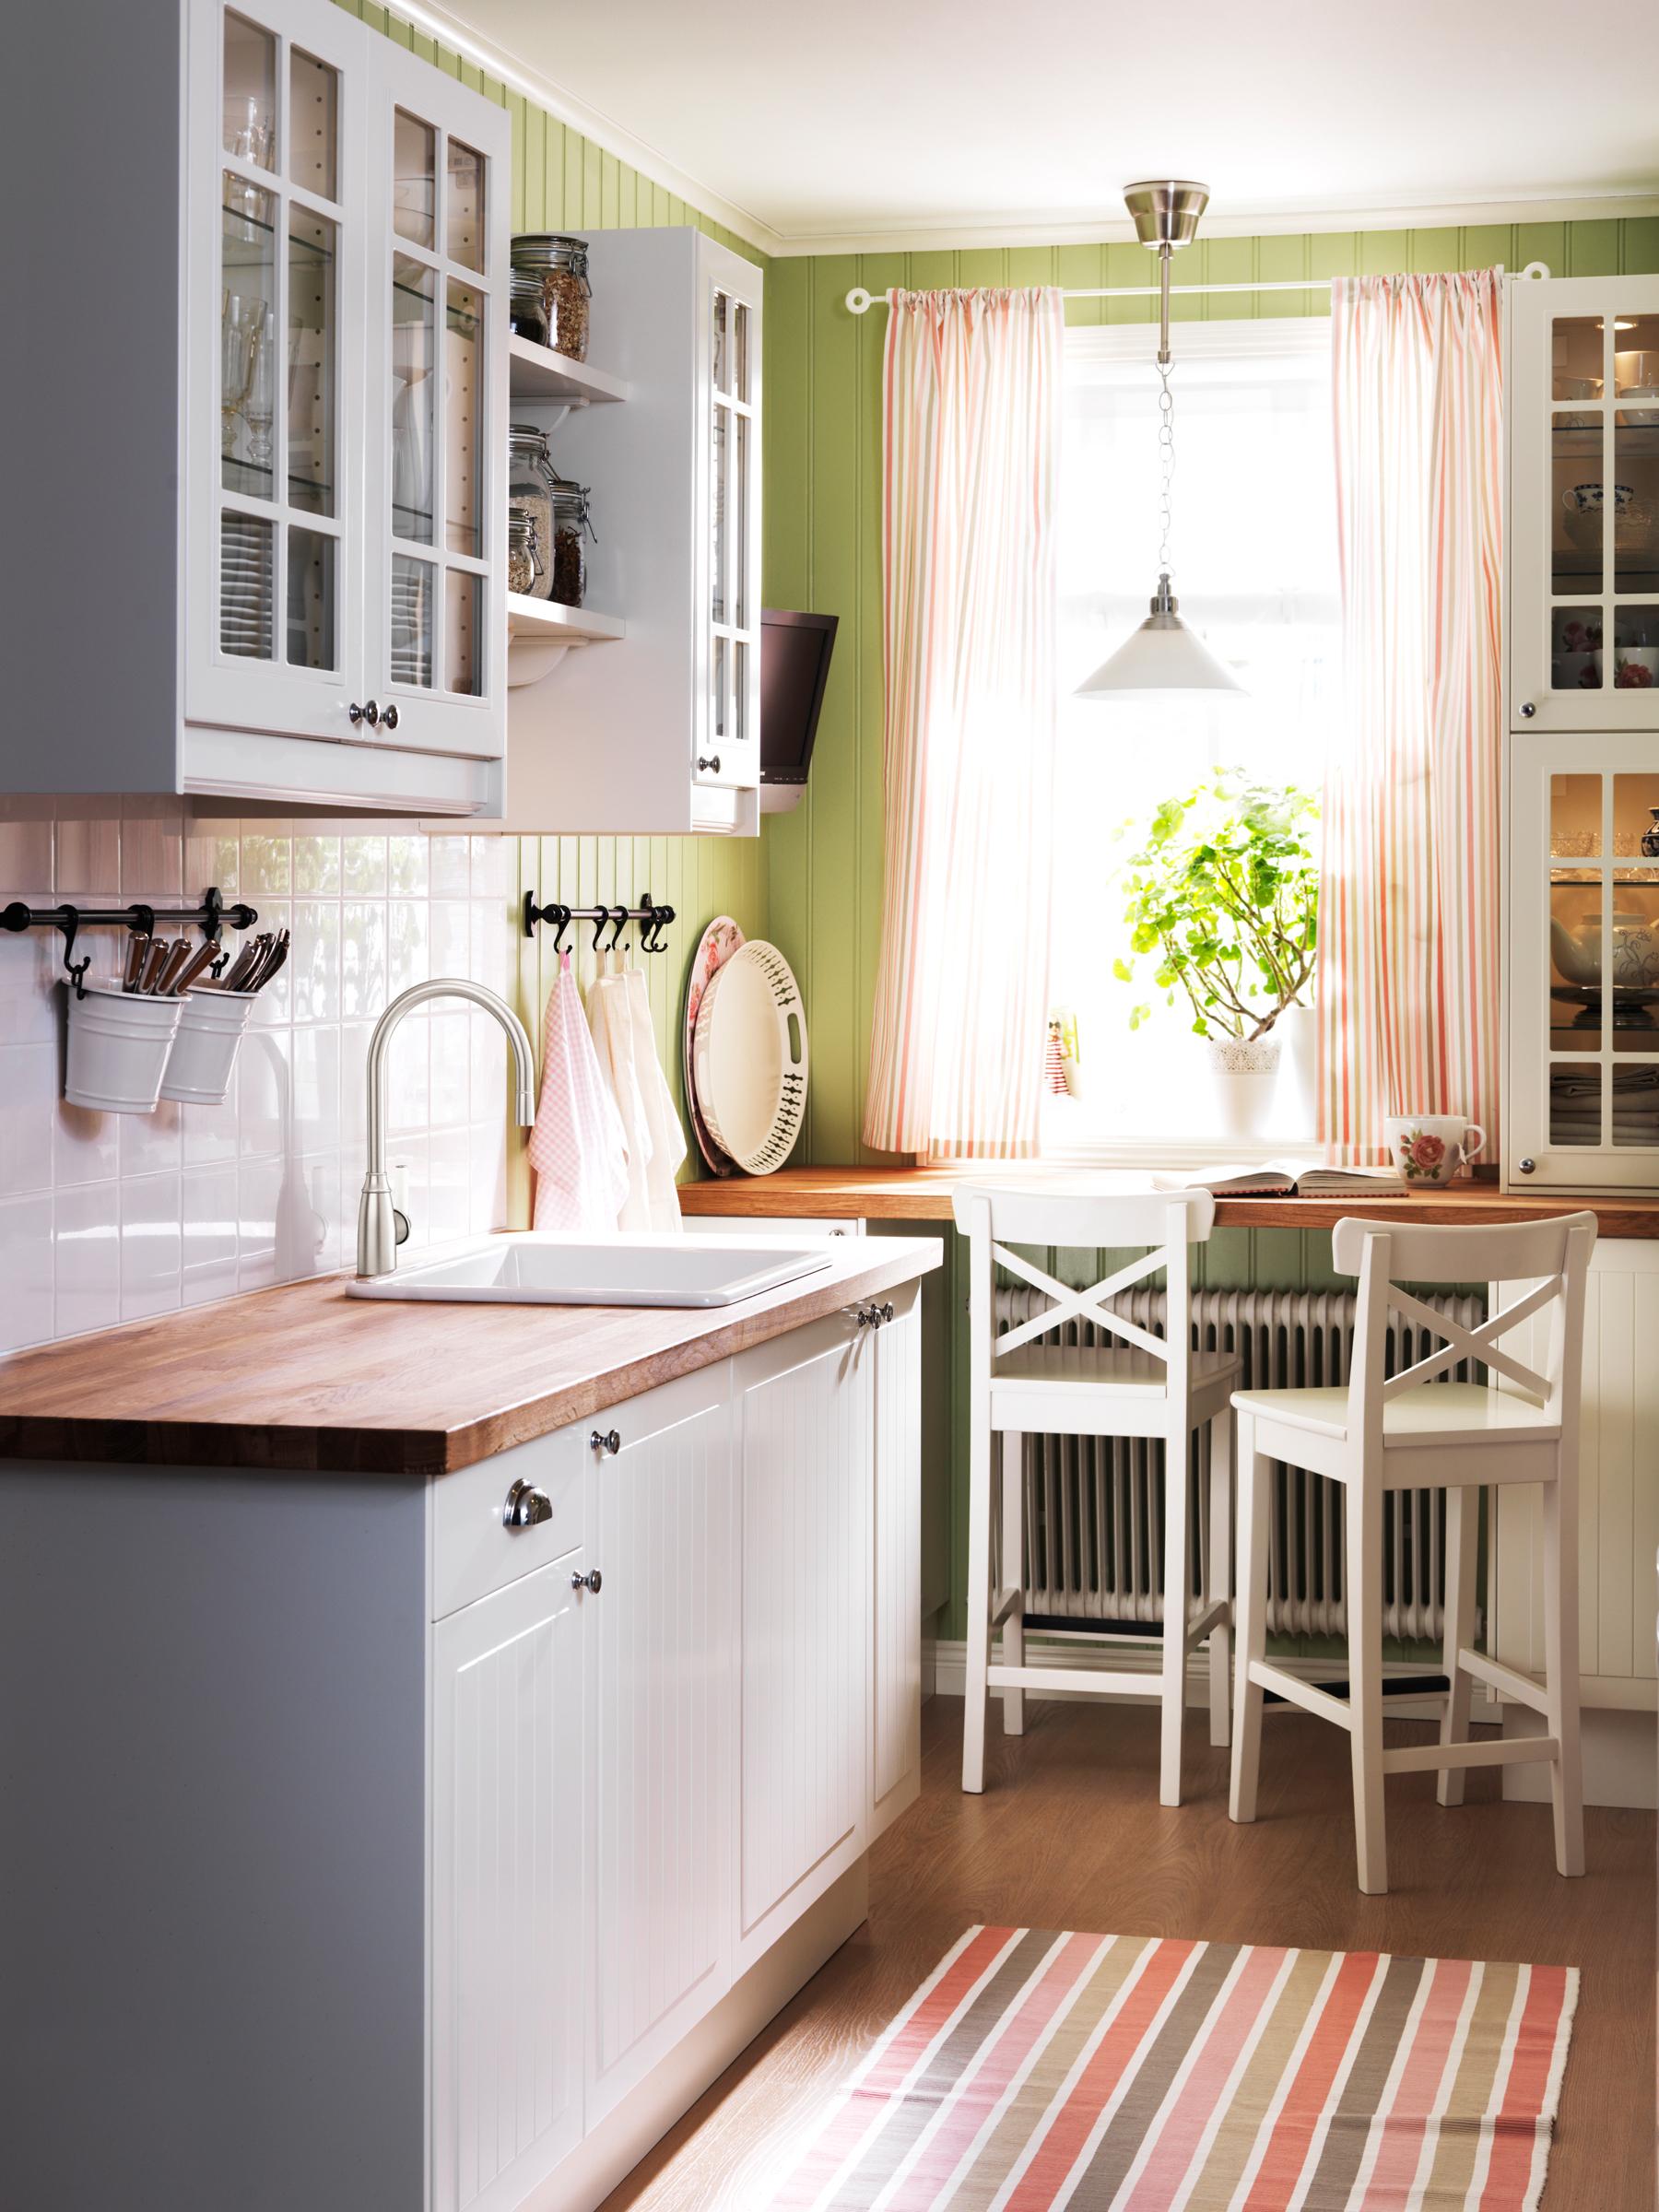 Kücheneinbauschränke und Sitzecke im Landhausstil #landhausstil ©Inter IKEA Systems B.V